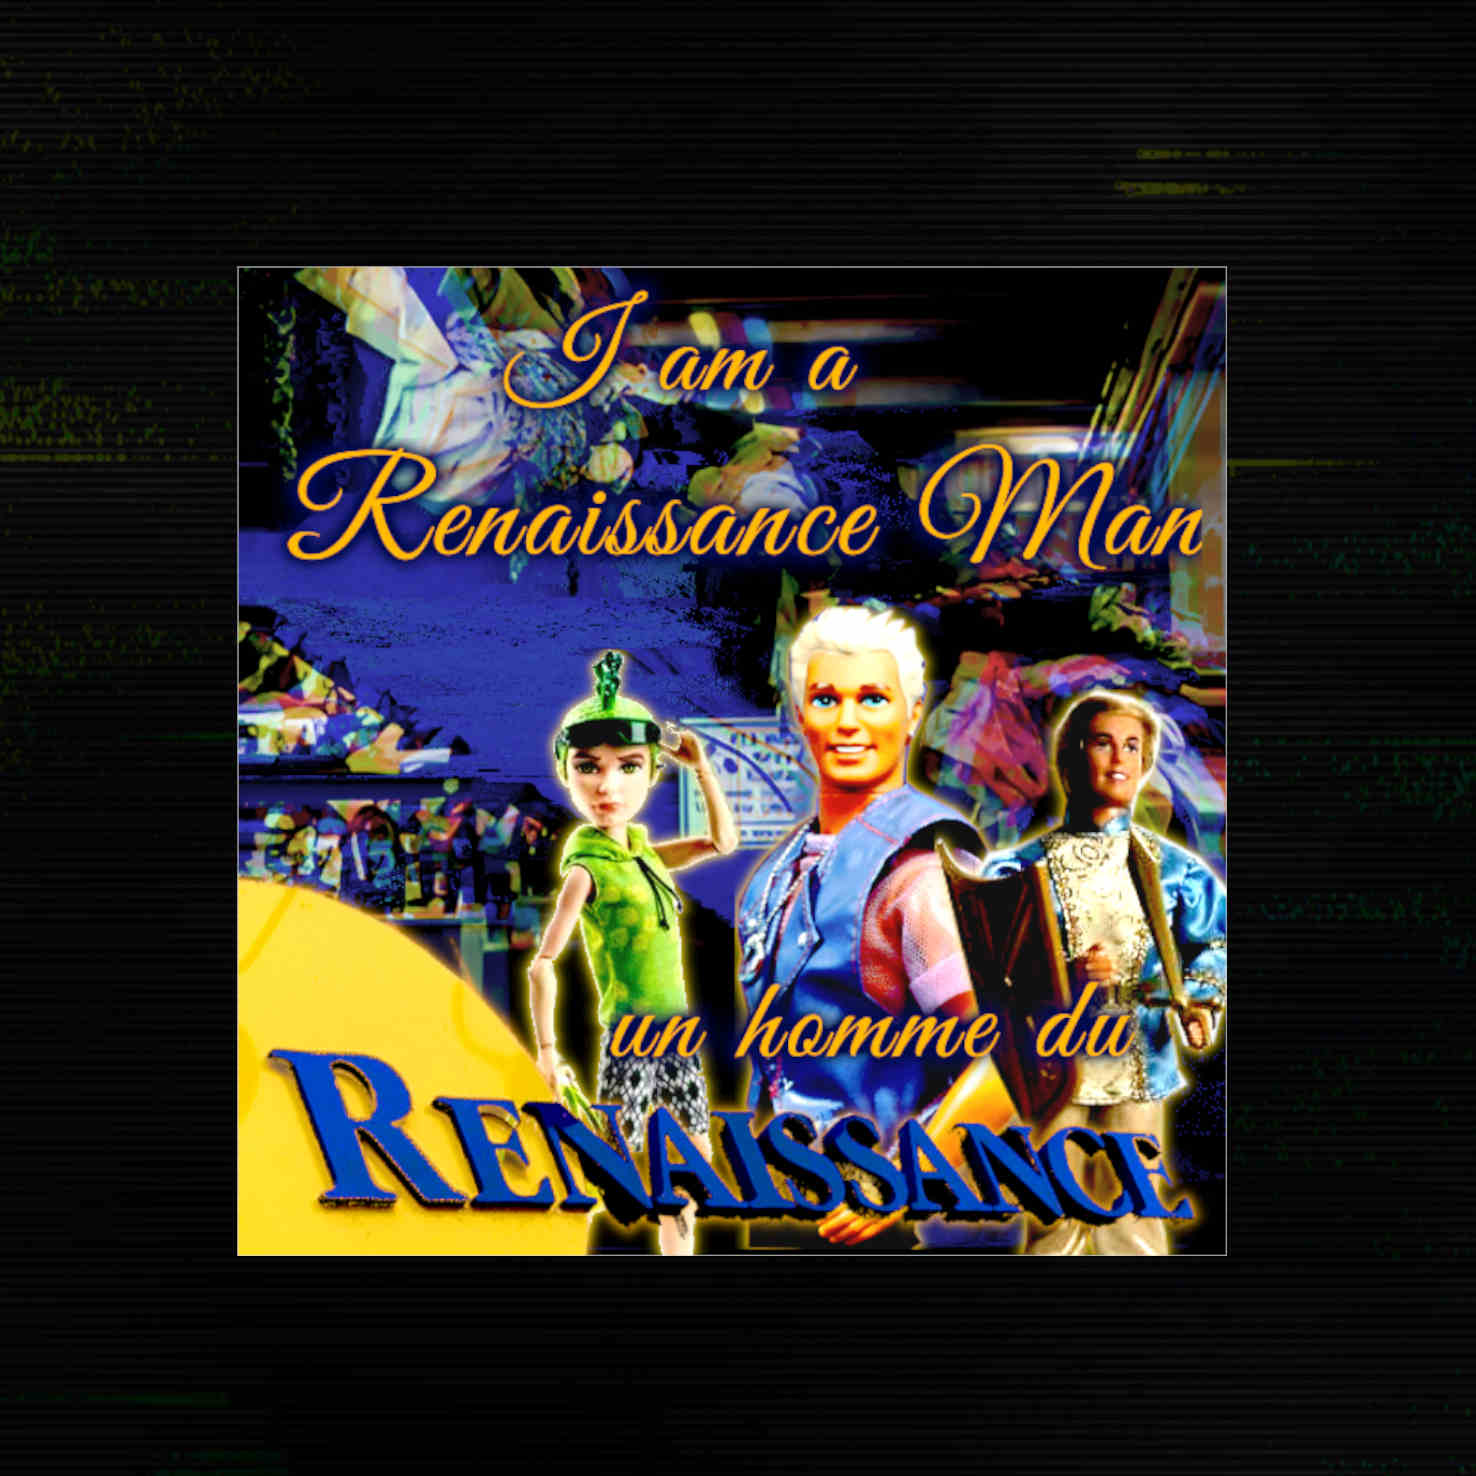 Sticker that says : I am a Renaissance man, un homme du Renaissance. With images of Ken dolls and the Renaissance thrift stores logo